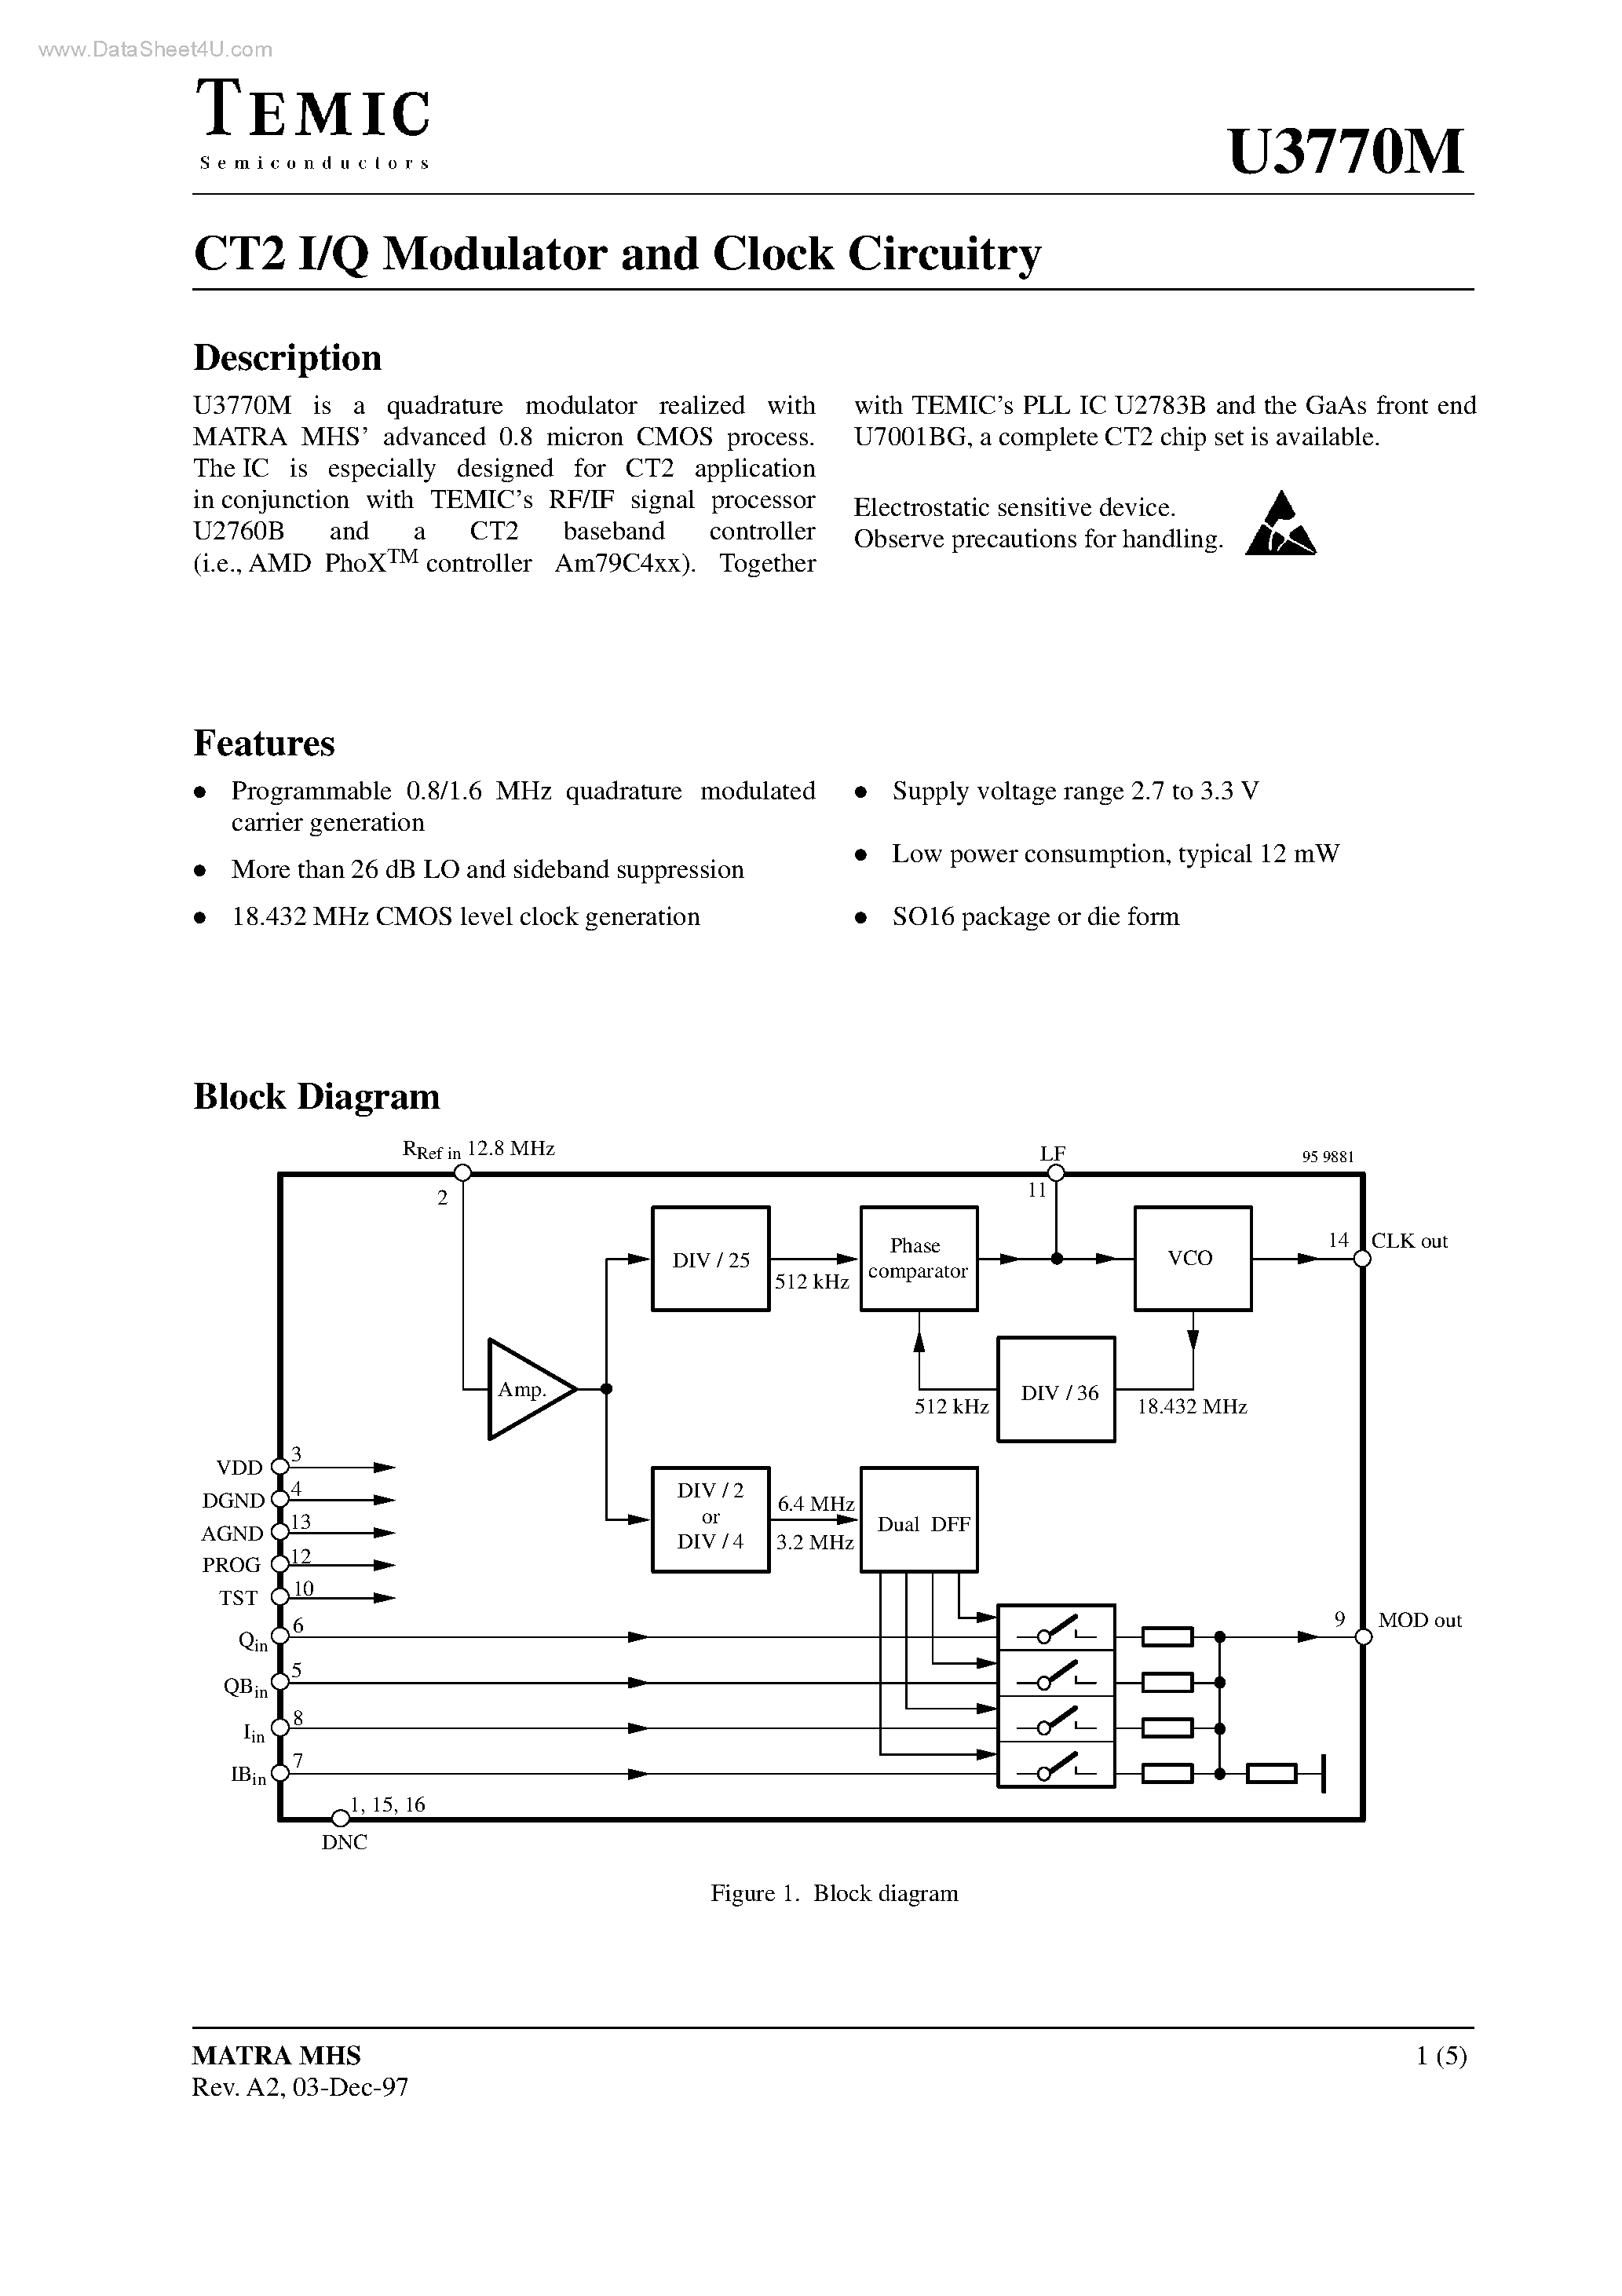 Datasheet U3770M - CT2 I/Q Modulator and Clock Circuitry page 1